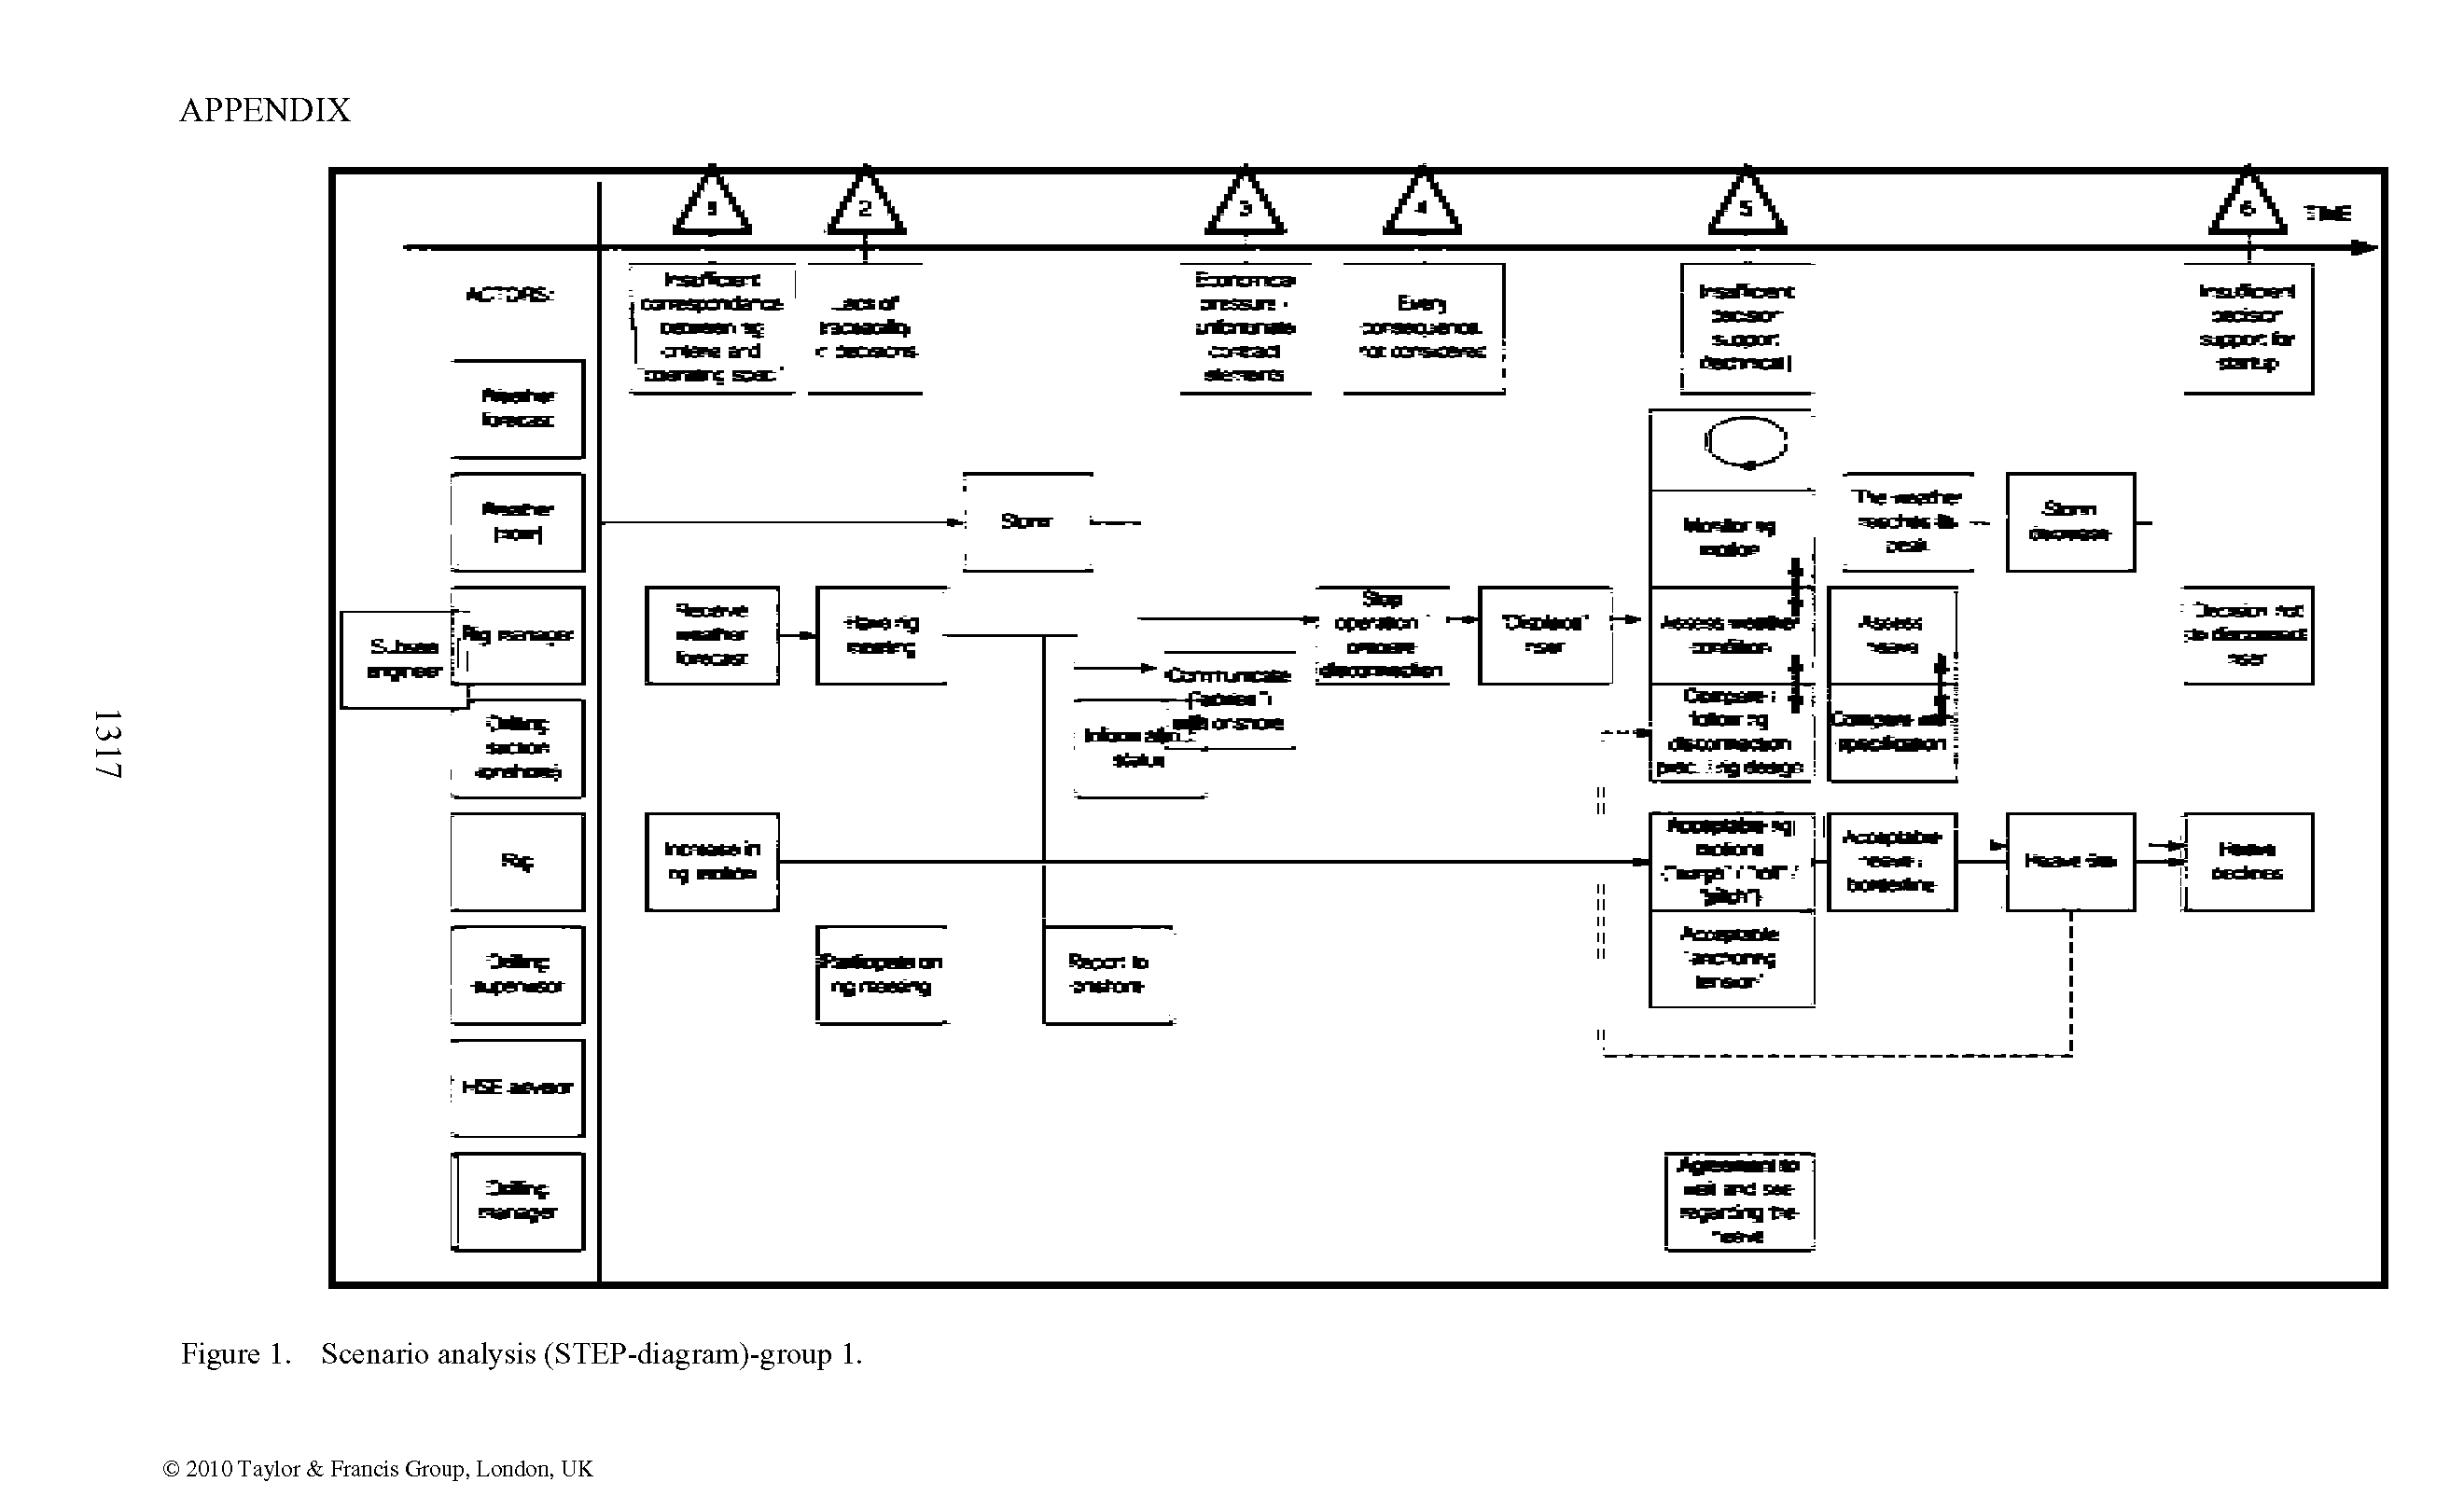 Figure 1. Scenario analysis (STEP-diagram)-group 1.